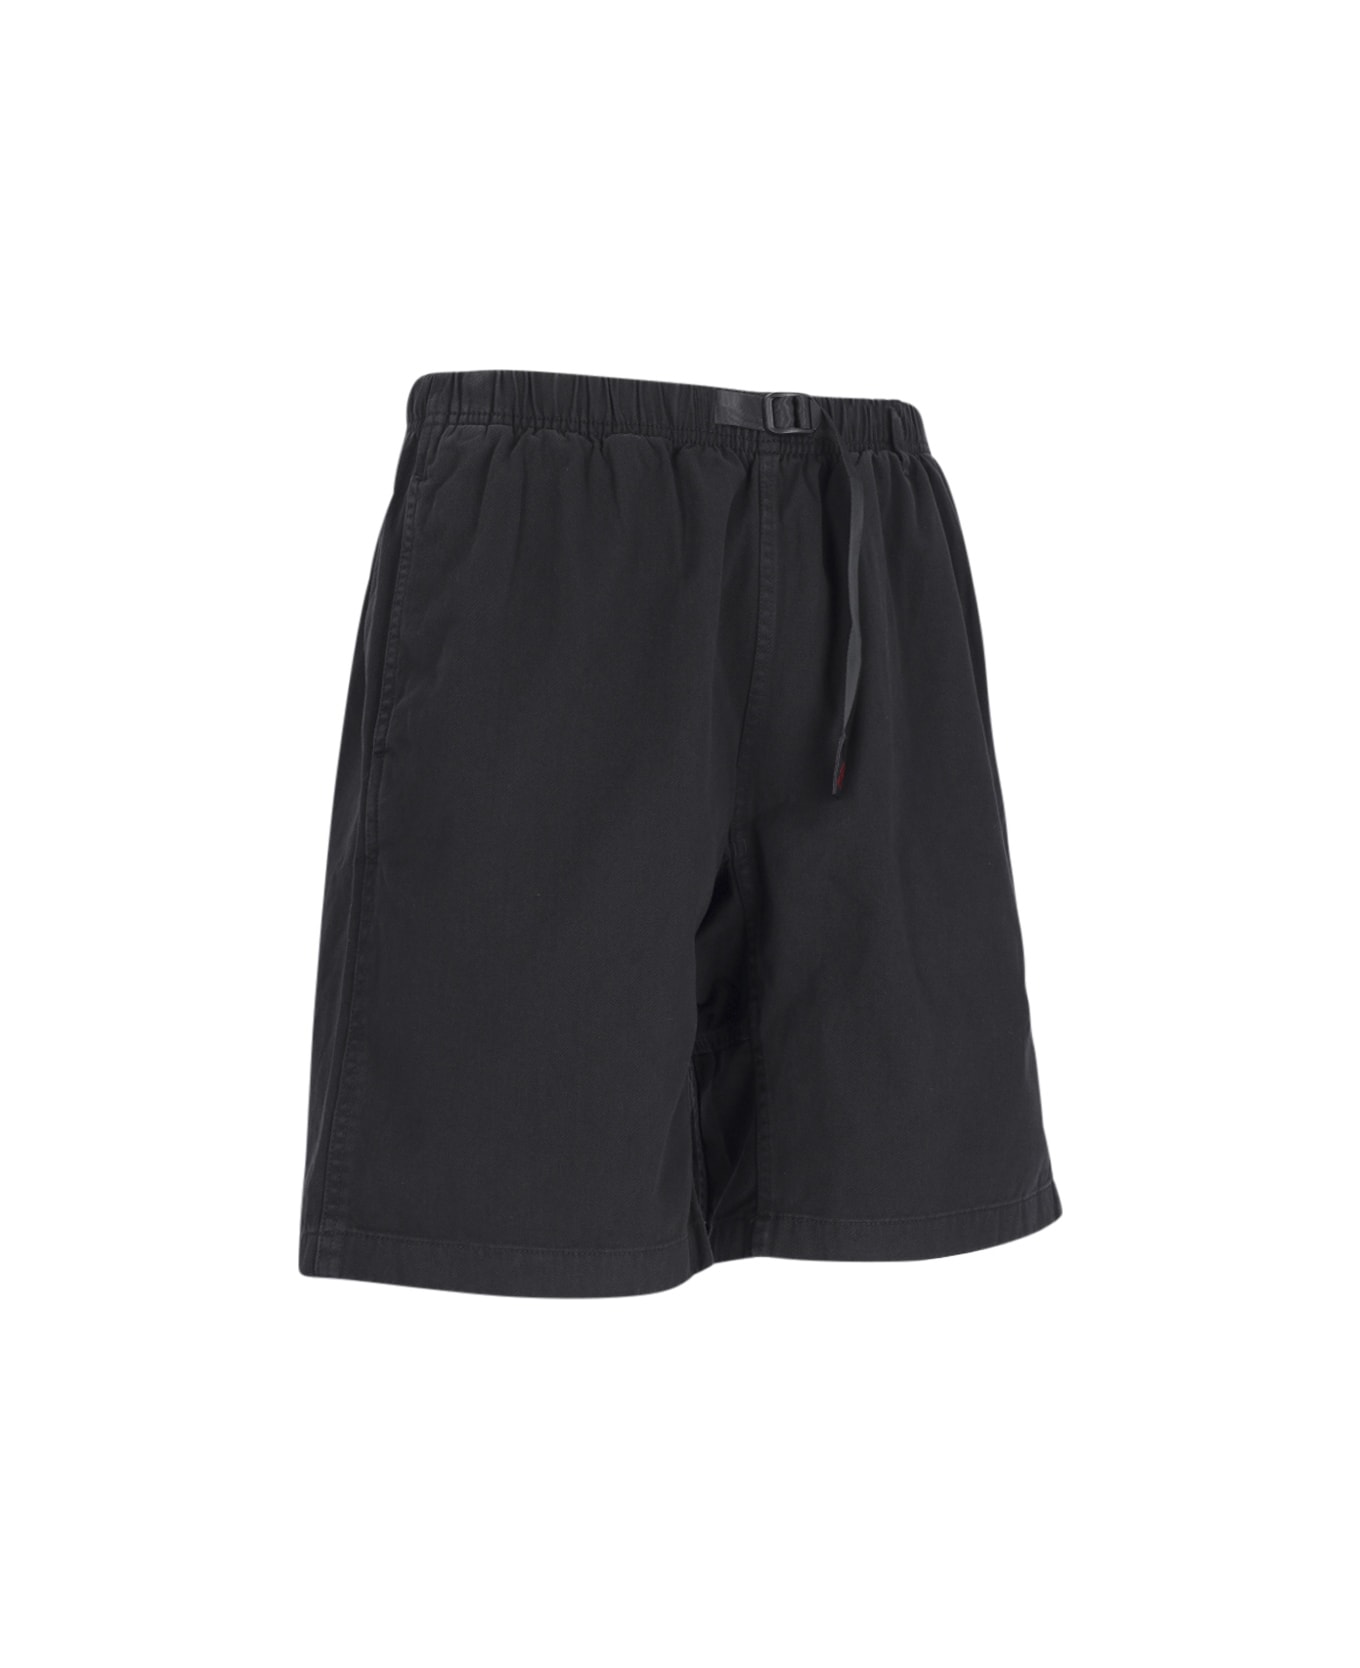 Gramicci 'g-short' Shorts - Black  